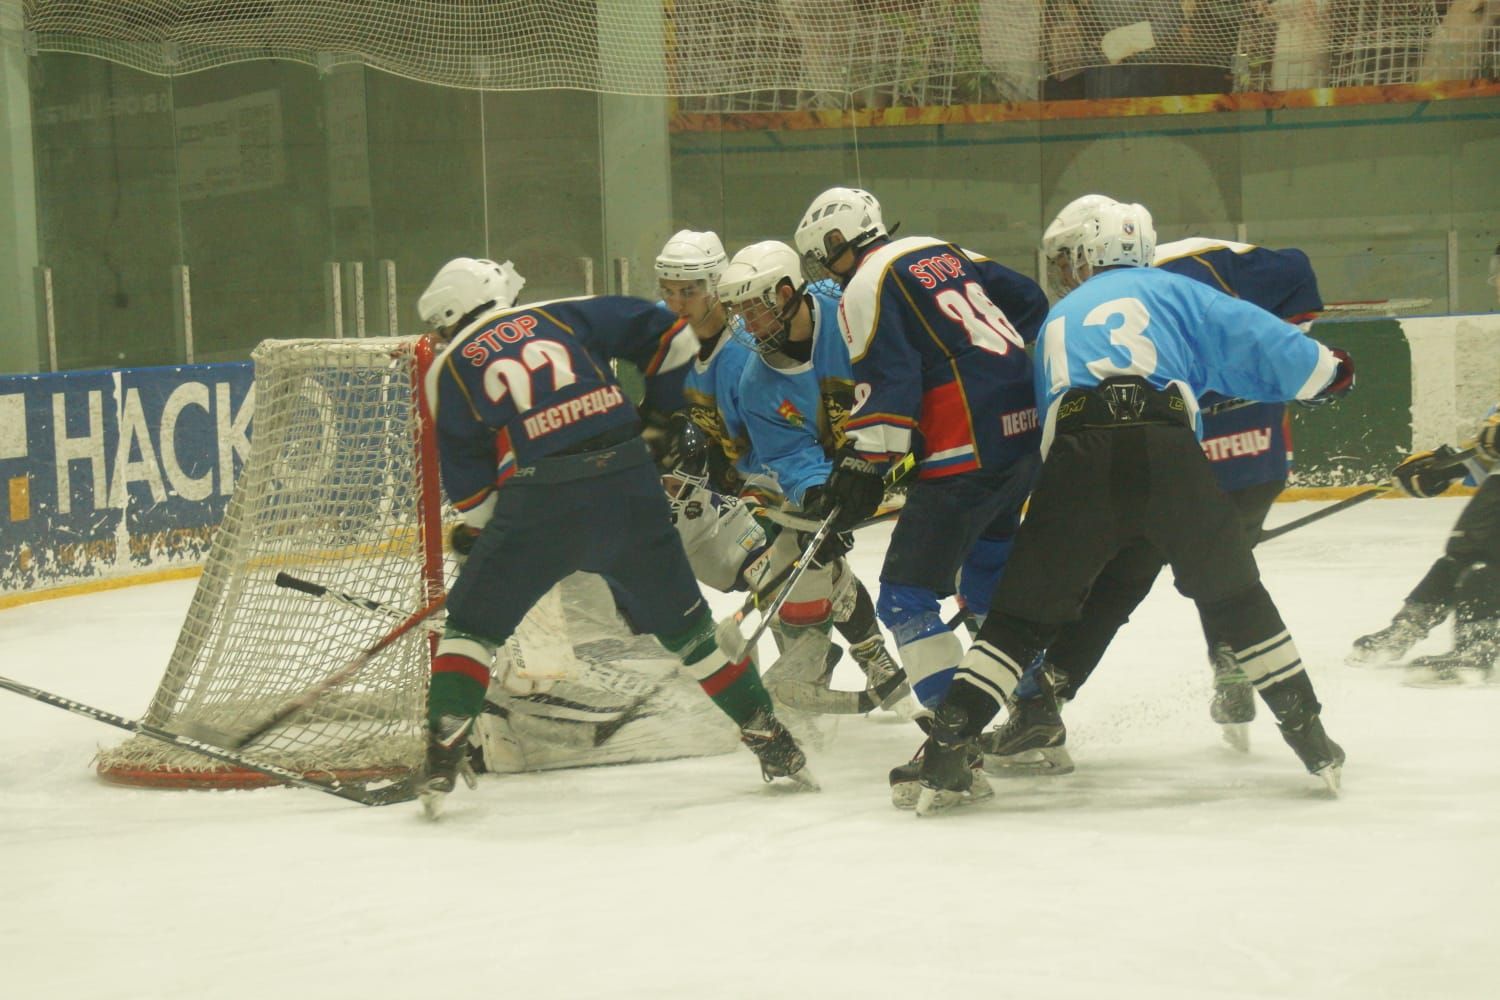 Пестречинские хоккеисты прошли в следующий круг соревнований